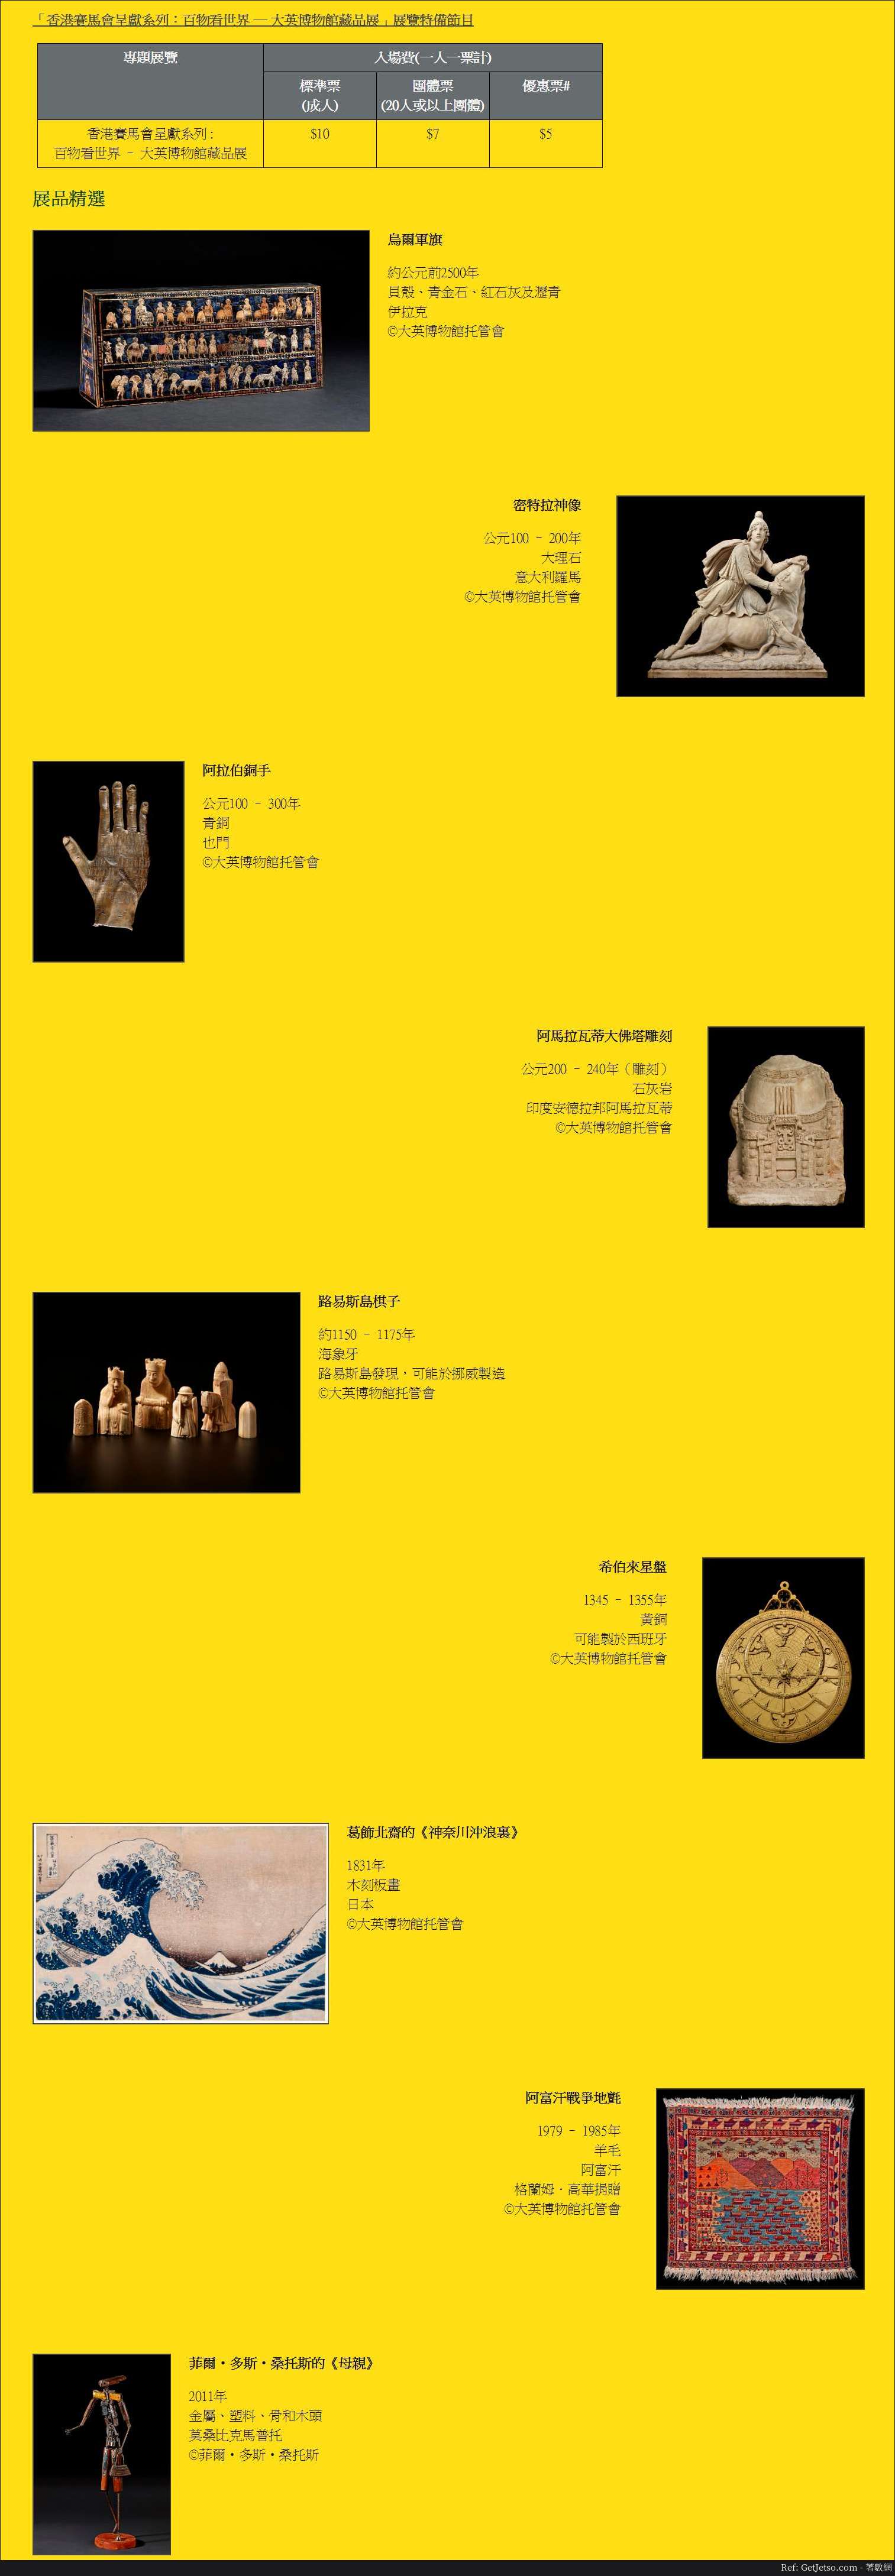 百物看世界- 大英博物館藏品展@香港文化博物館(至19年9月9日)圖片1